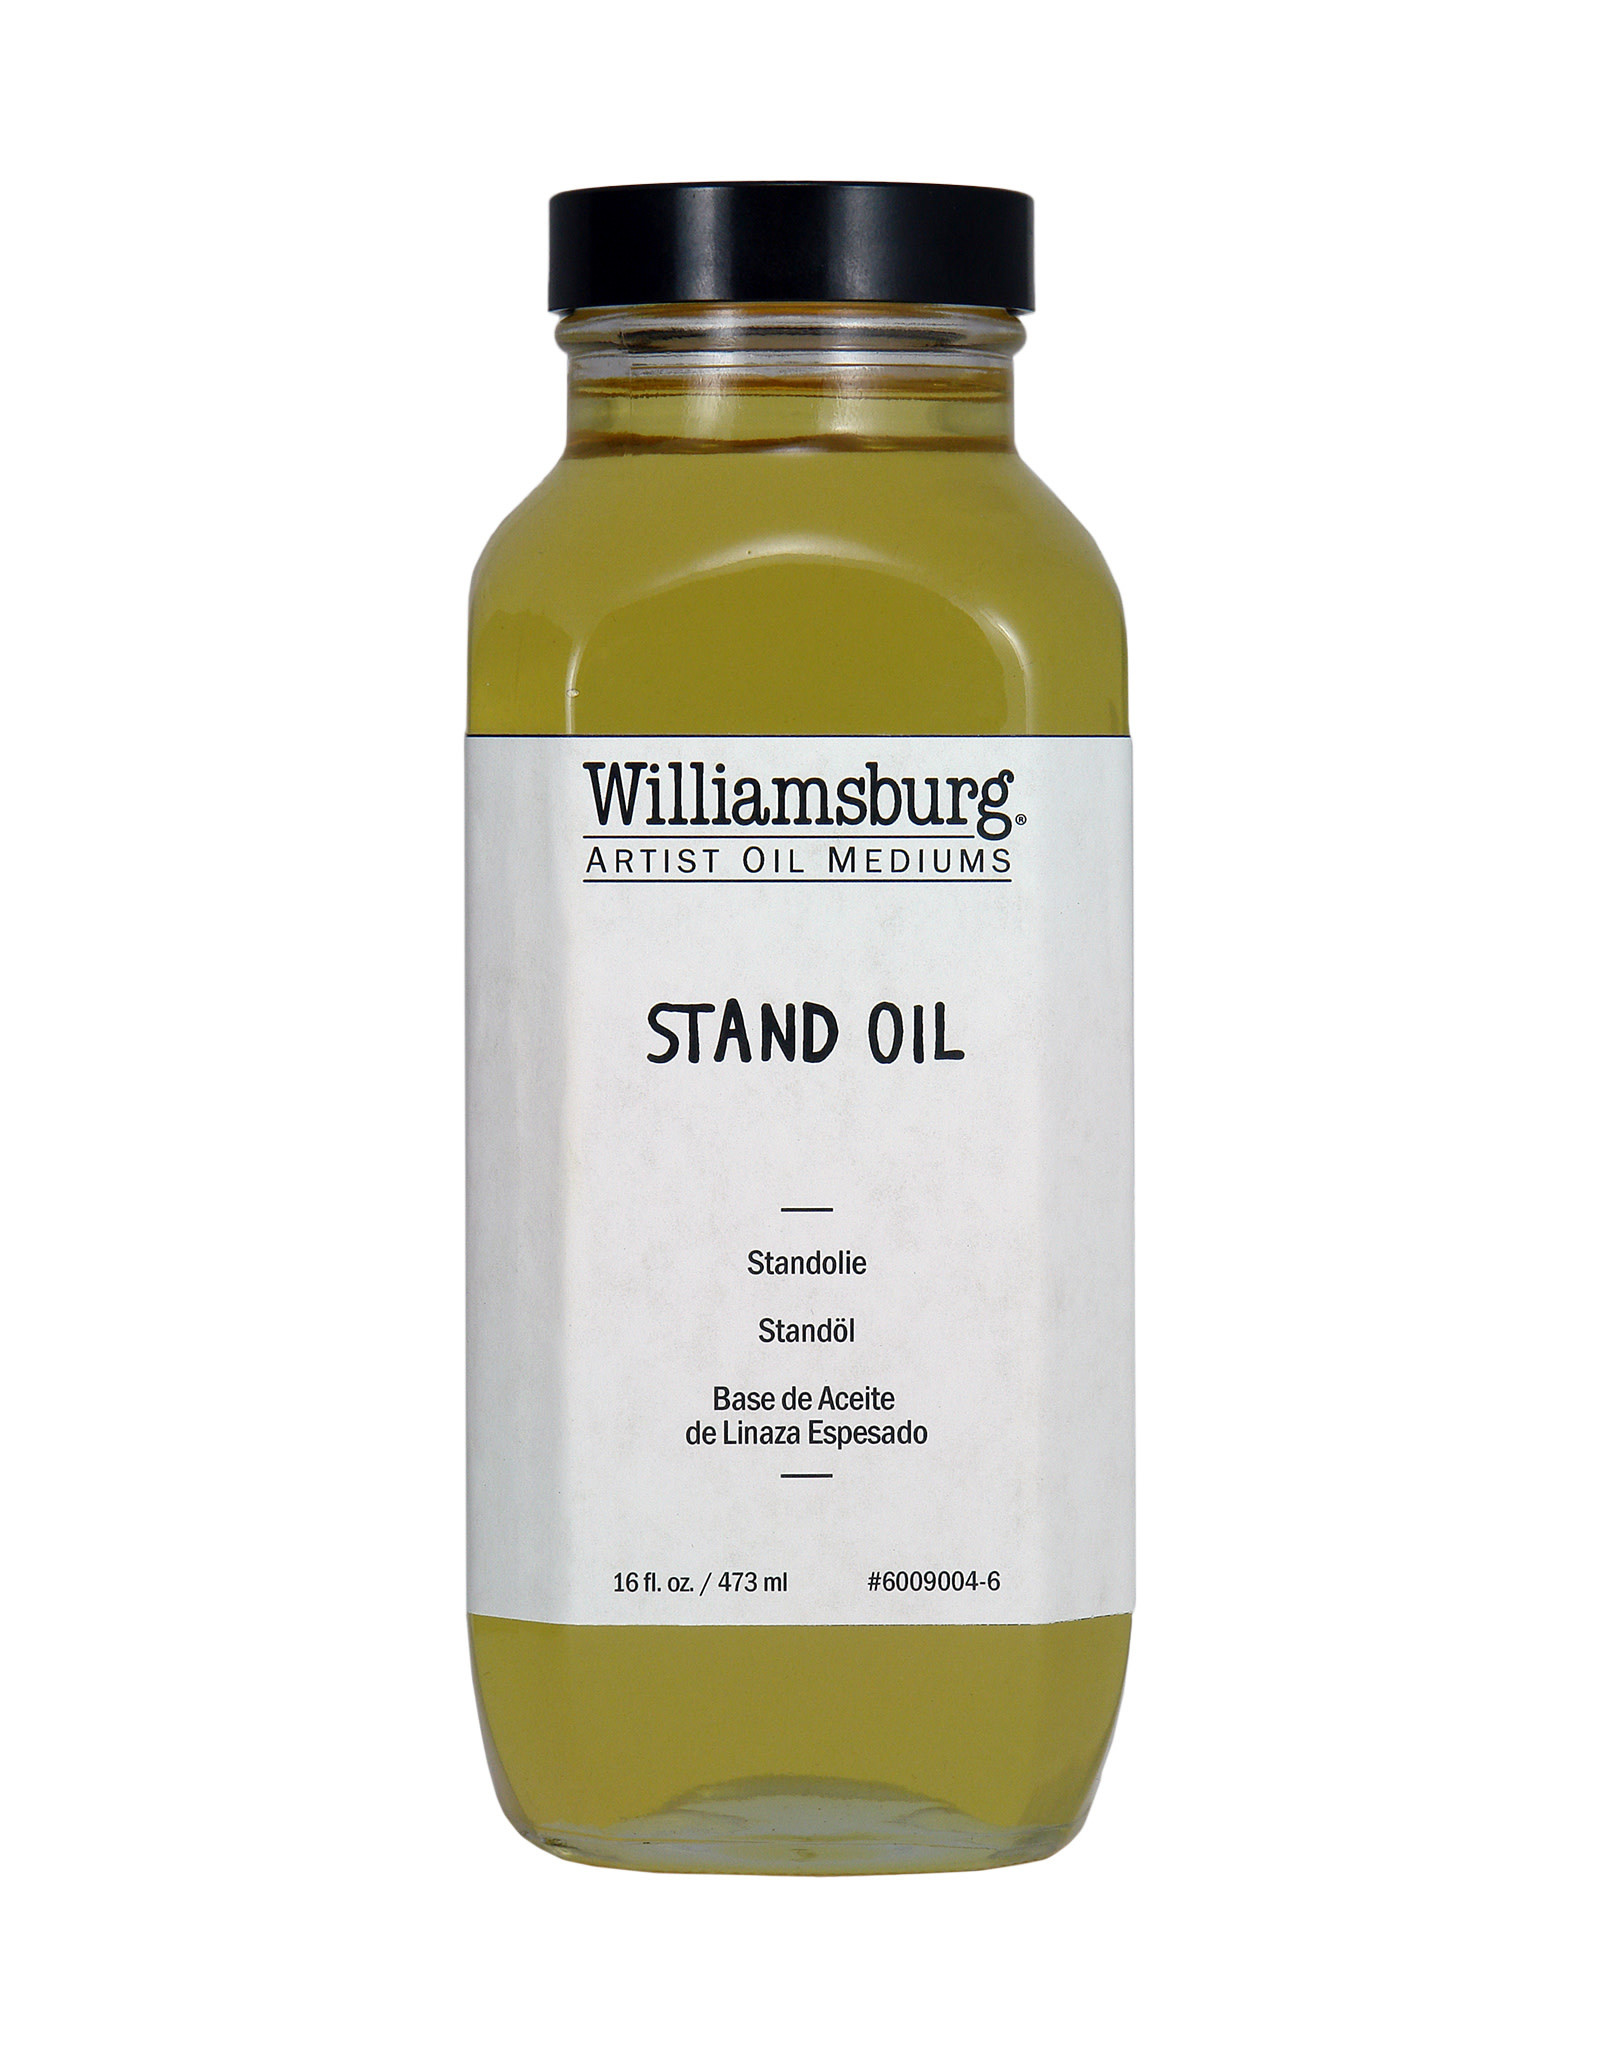 Golden Williamsburg Stand Oil 16oz